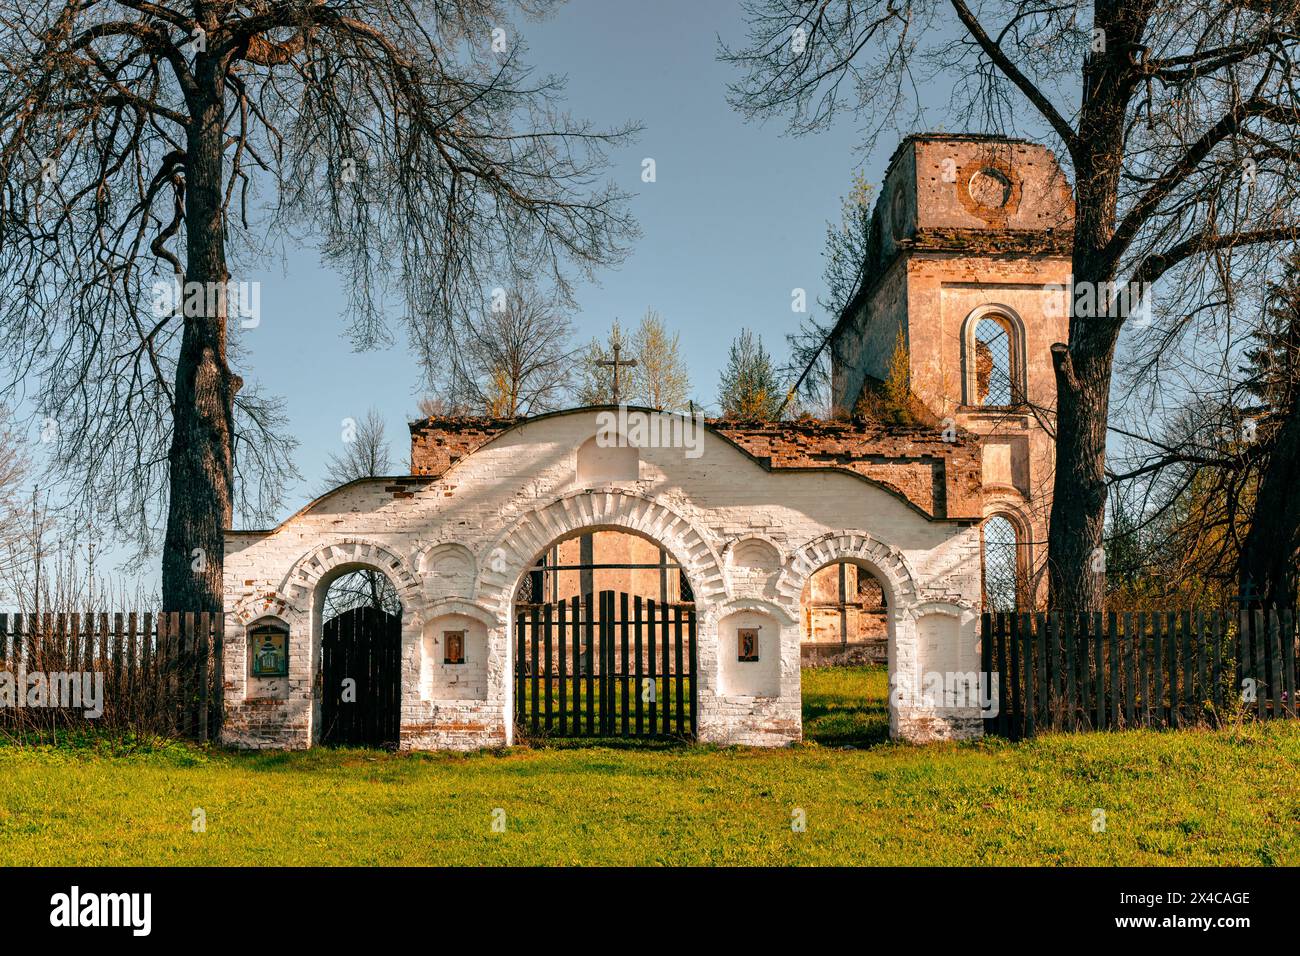 Das bogenförmige Tor vor der malerisch zerbröckelnden Kirche. Ausgewählter Fokus. Hochwertige Fotos Stockfoto